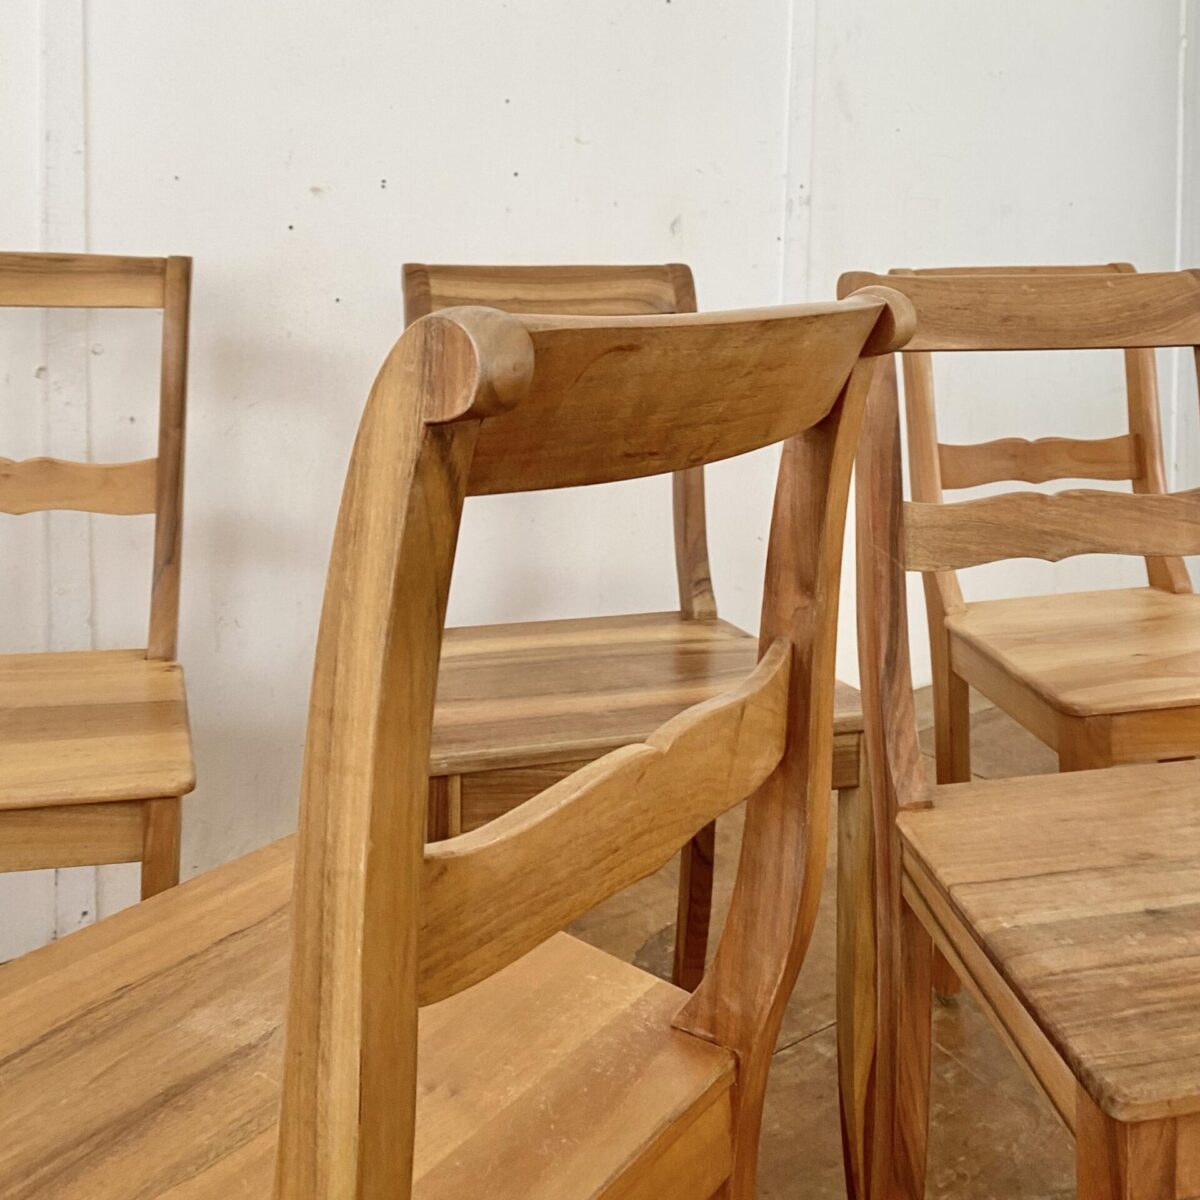 Deuxieme.shop Nussbaum Biedermeier Stühle. Preis fürs Set. Die Stühle sind in stabilem guten Zustand, mit ein paar Wasserflecken auf den Sitzflächen. 